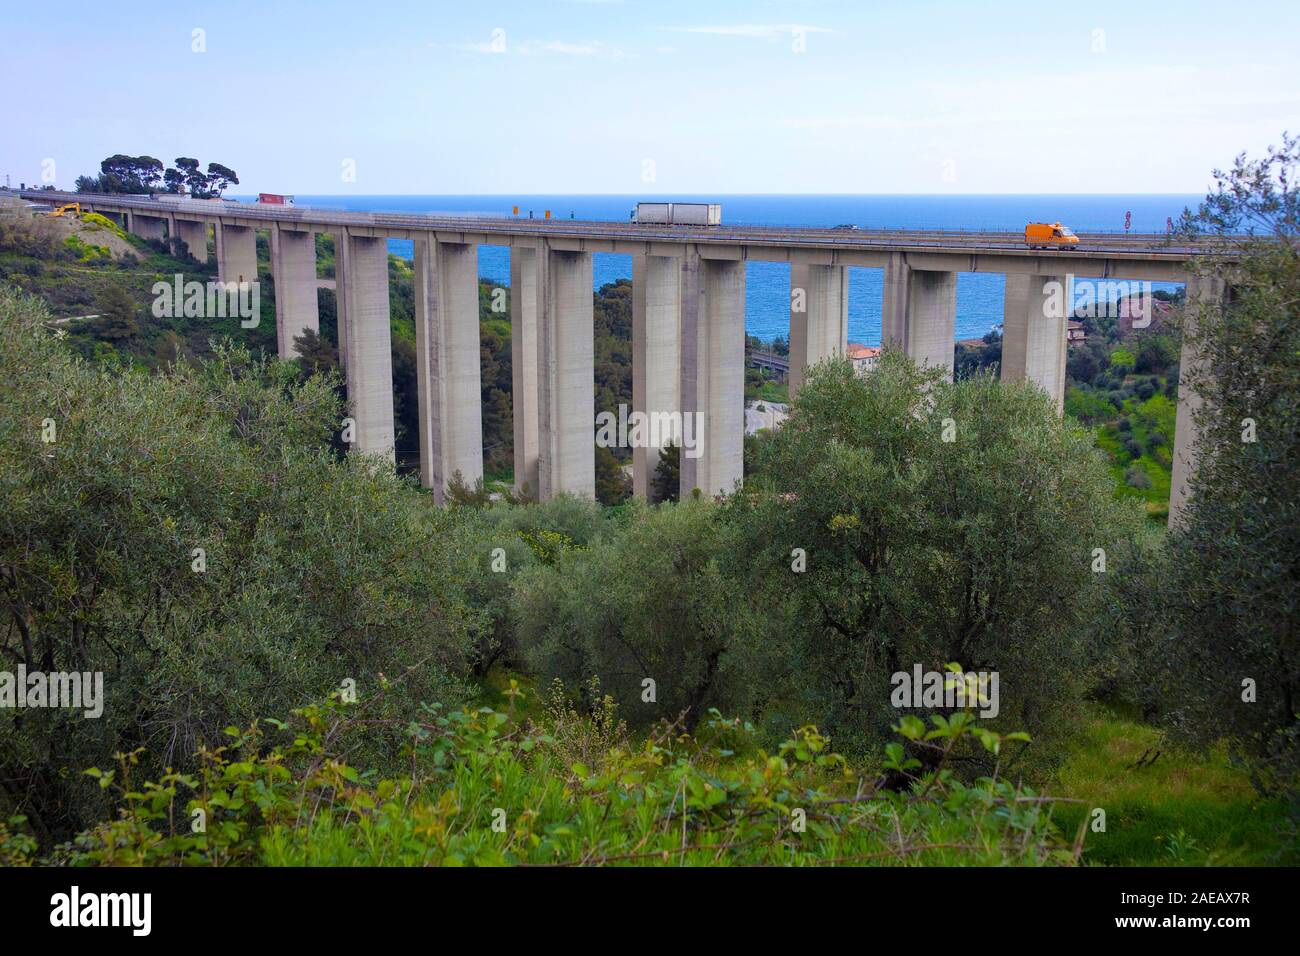 Taggia Viaduct, viaduct at Taggia, ligurian coast, Liguria, Italy Stock Photo